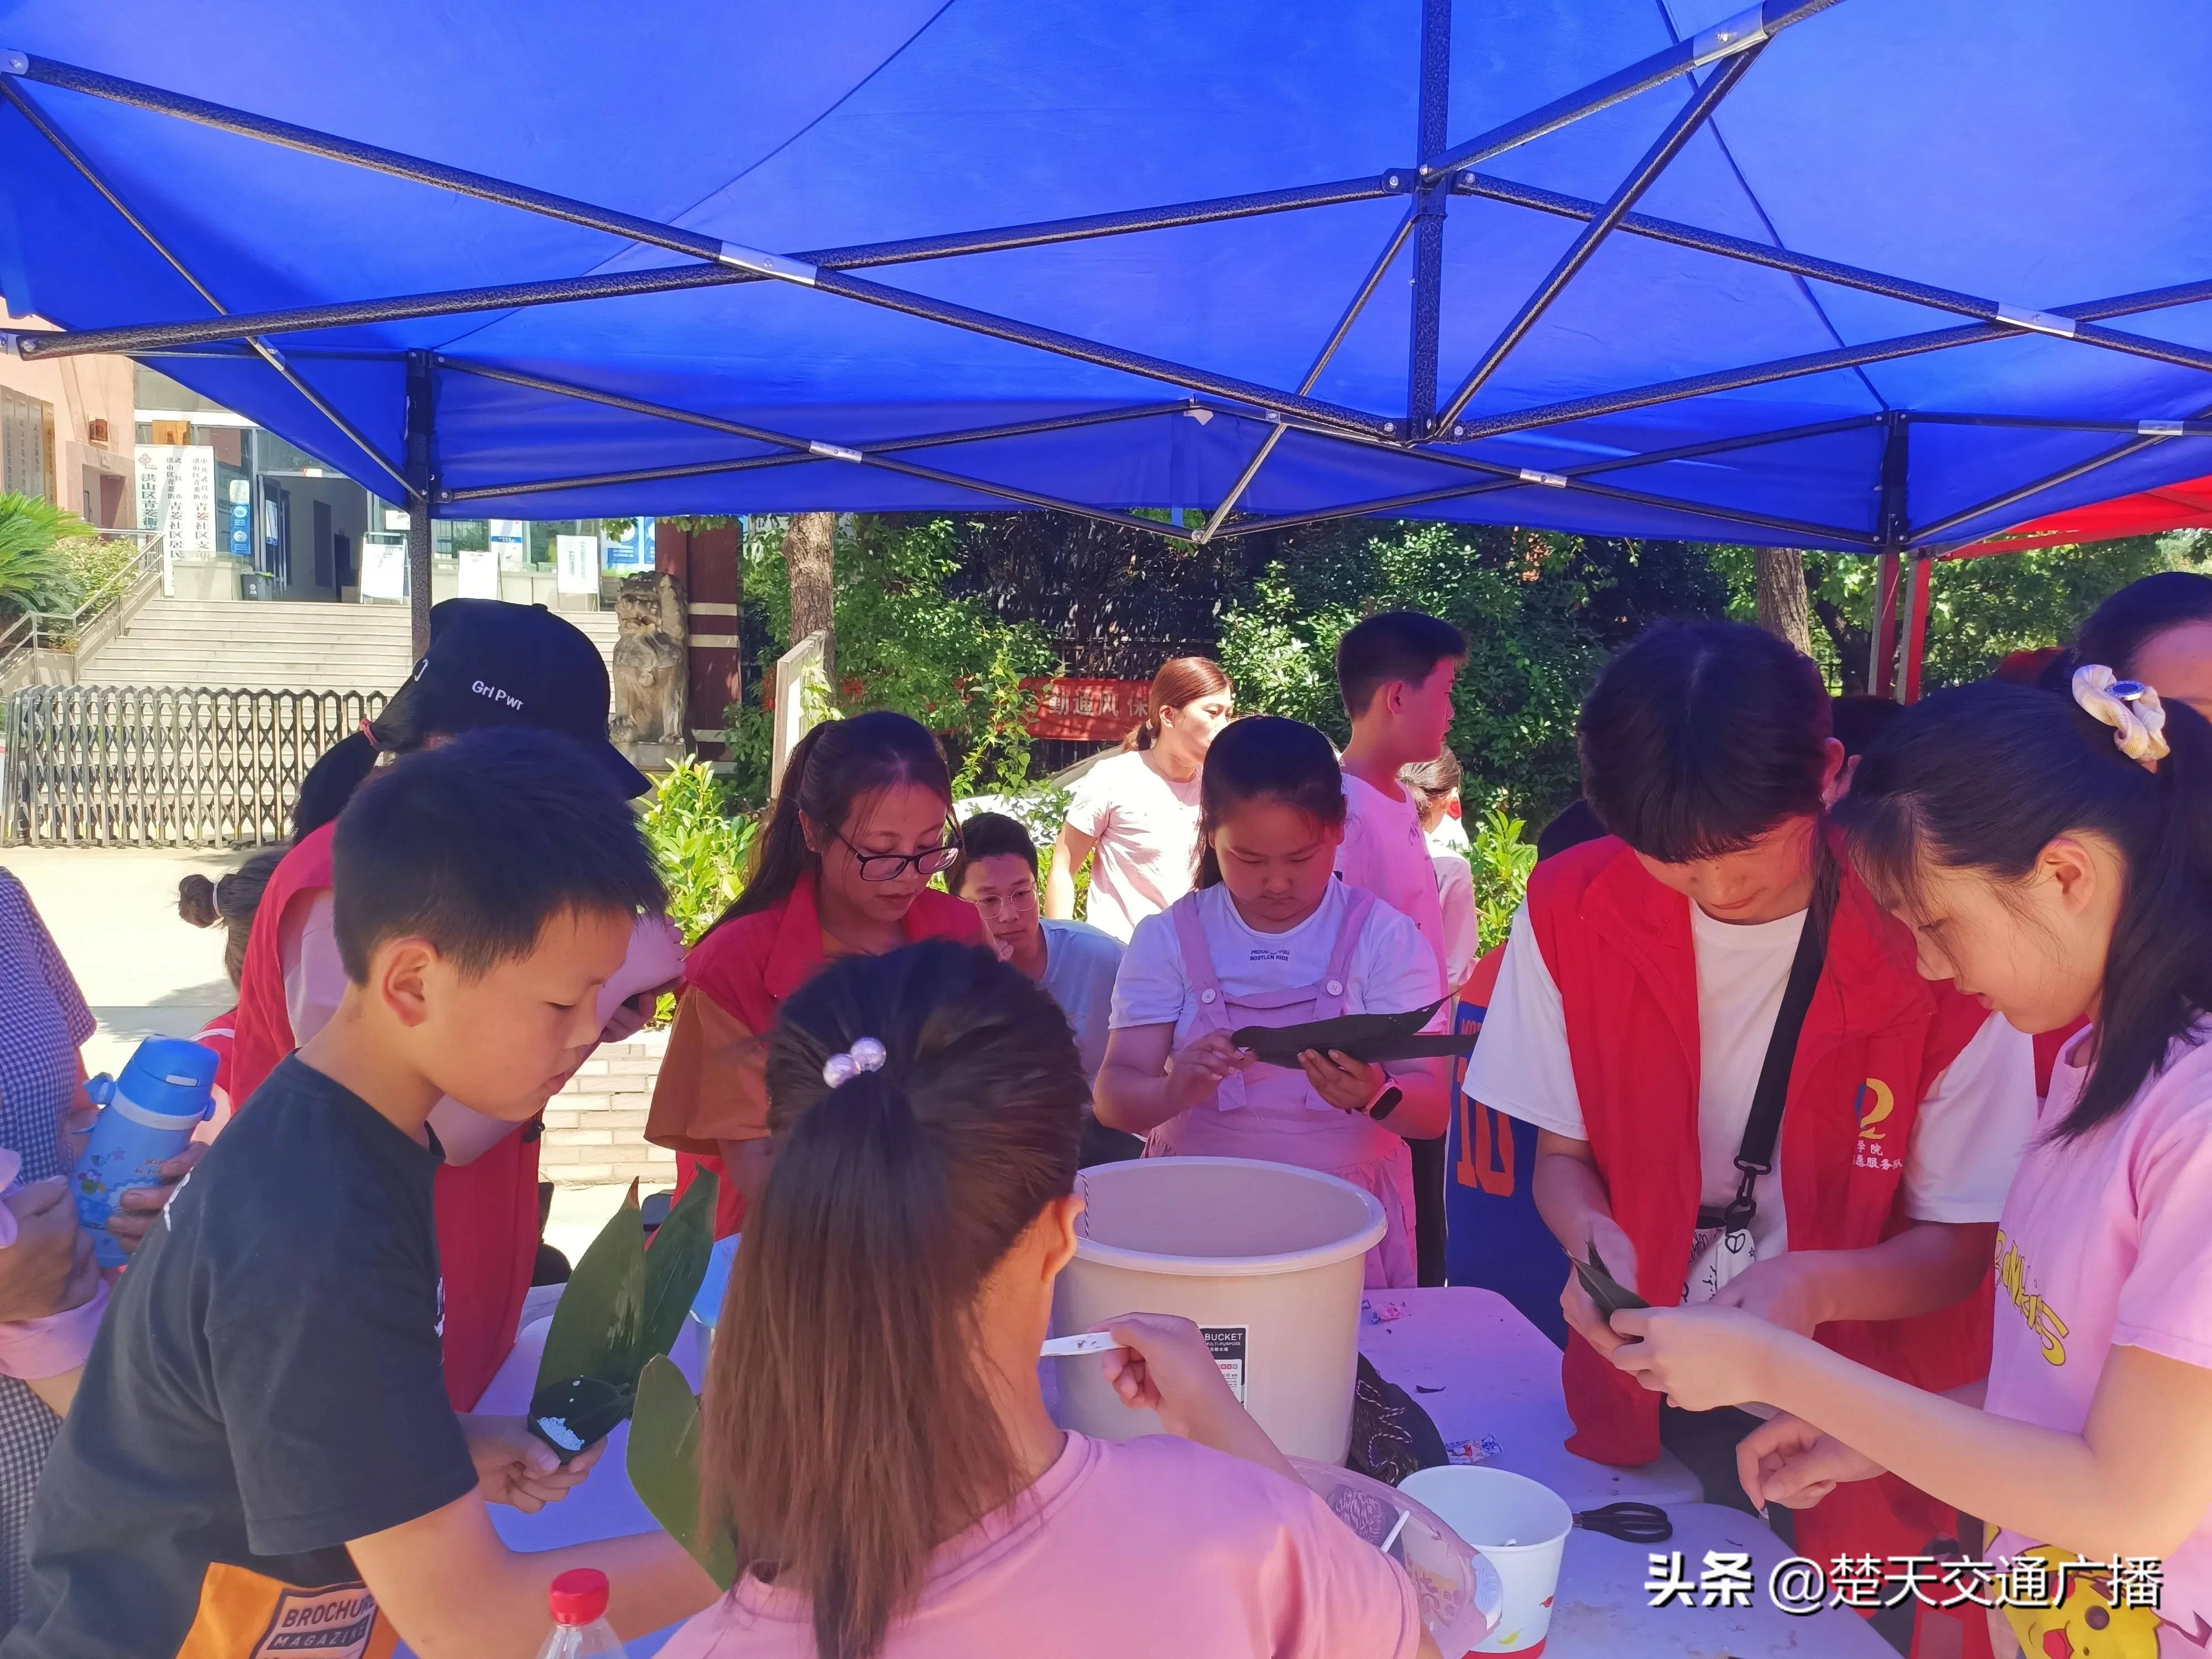 品端午、包粽子 ufc赛事竞猜官网志愿者与社区儿童提前过端午